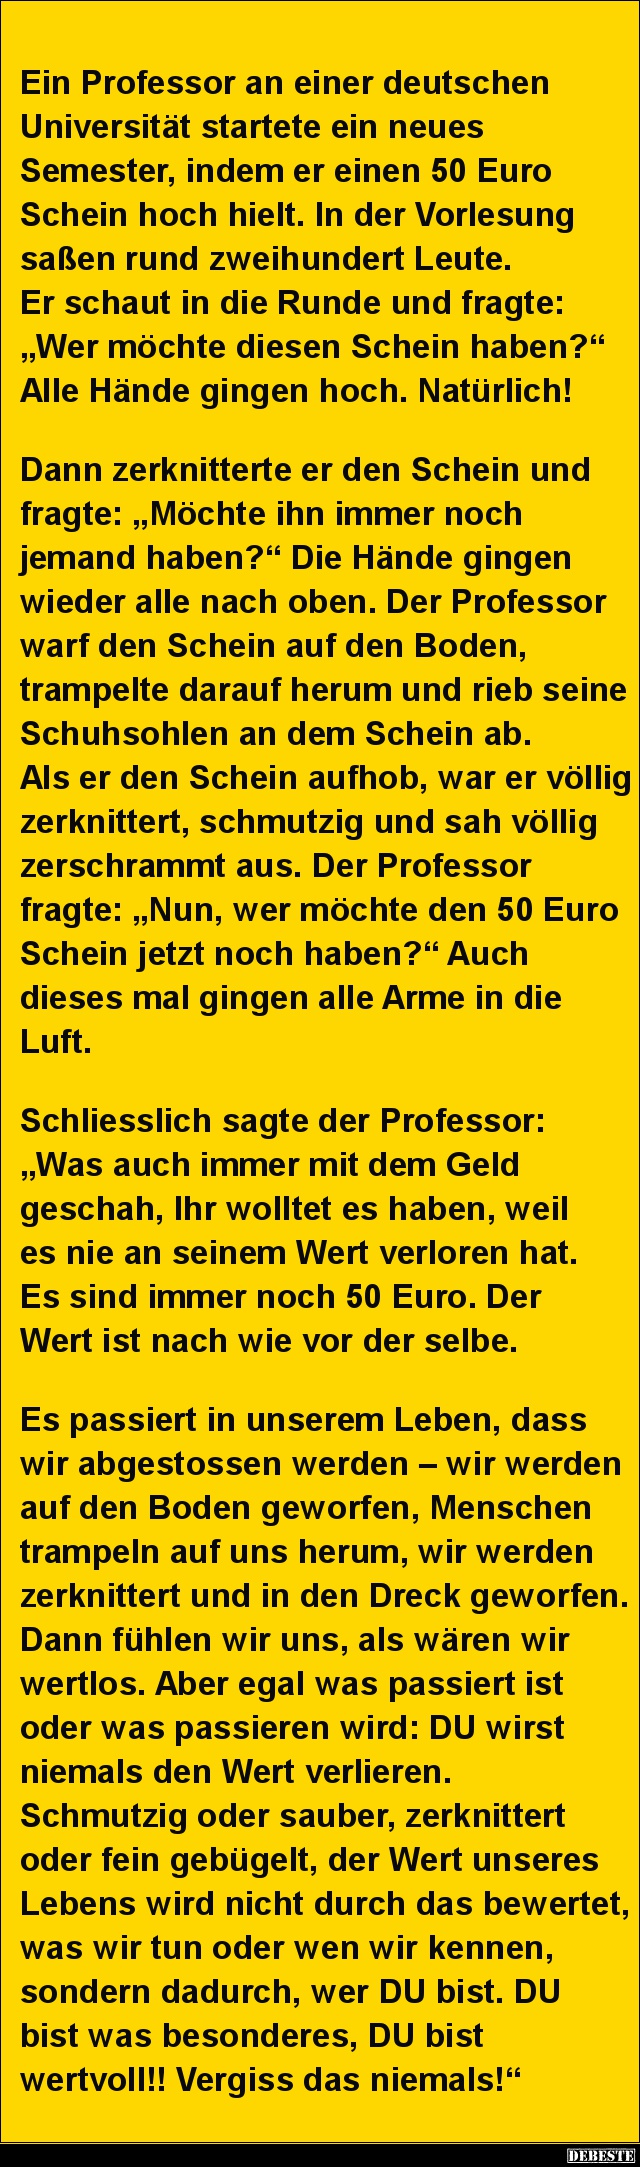 Ein Professor an einer deutschen Universität startete..